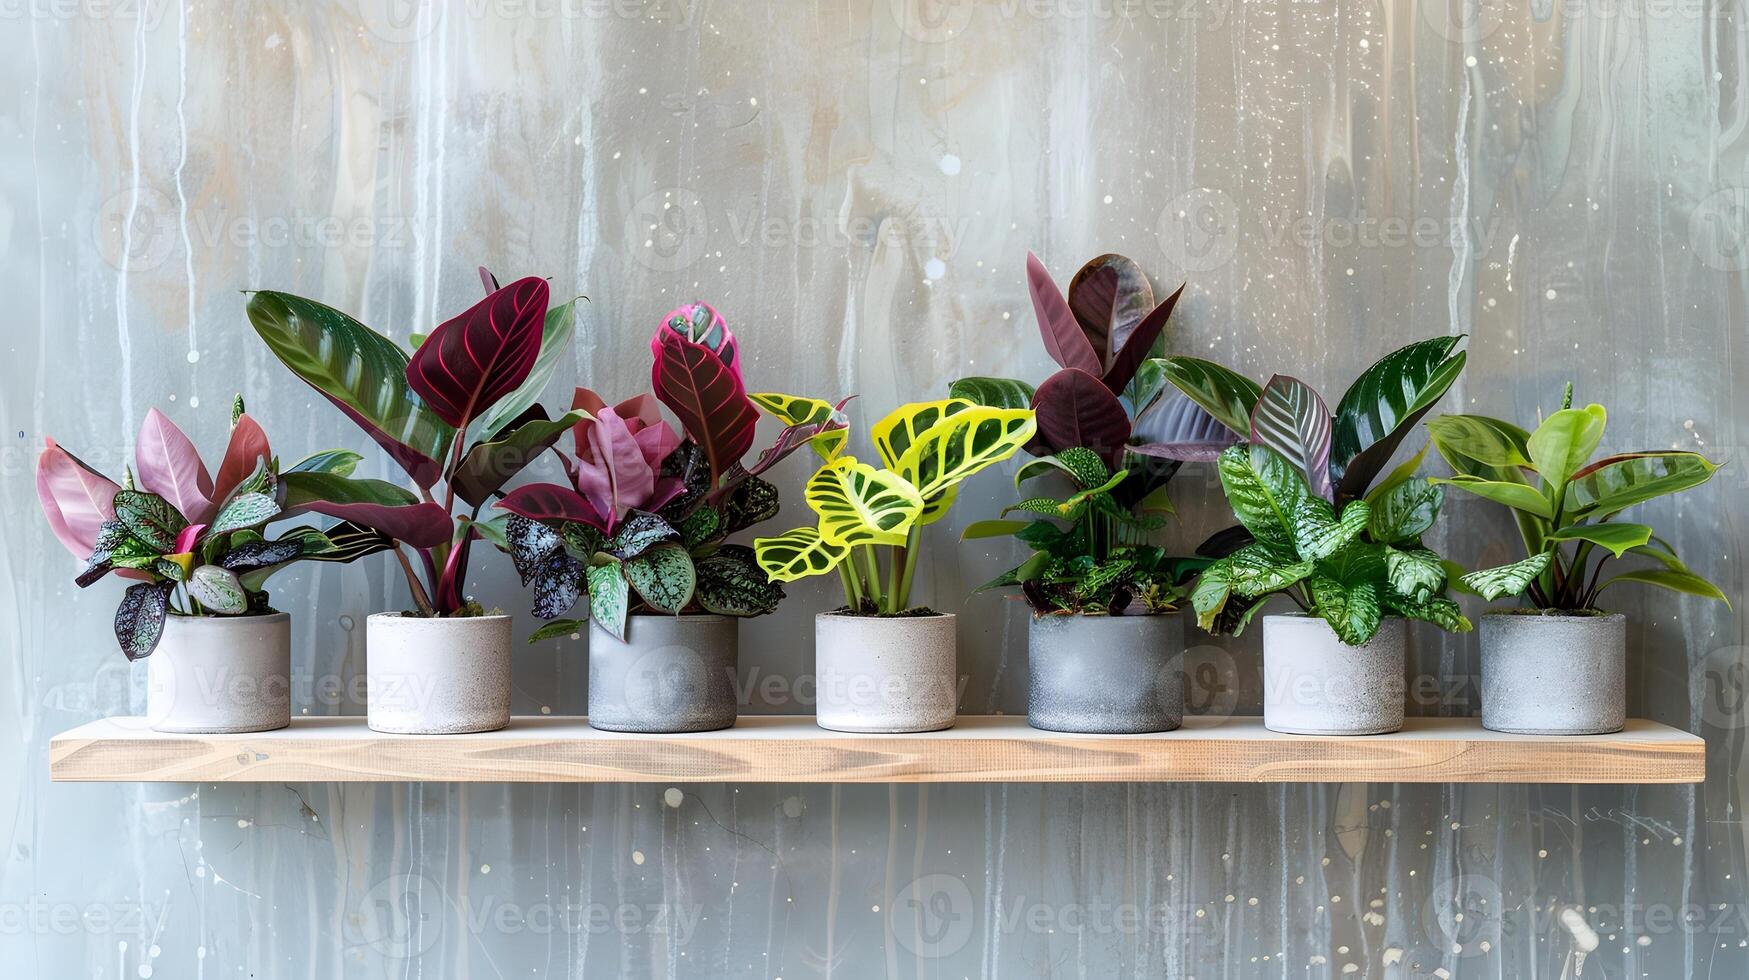 vibrante plantas de interior desplegado en de madera estantería en contra texturizado hormigón pared foto